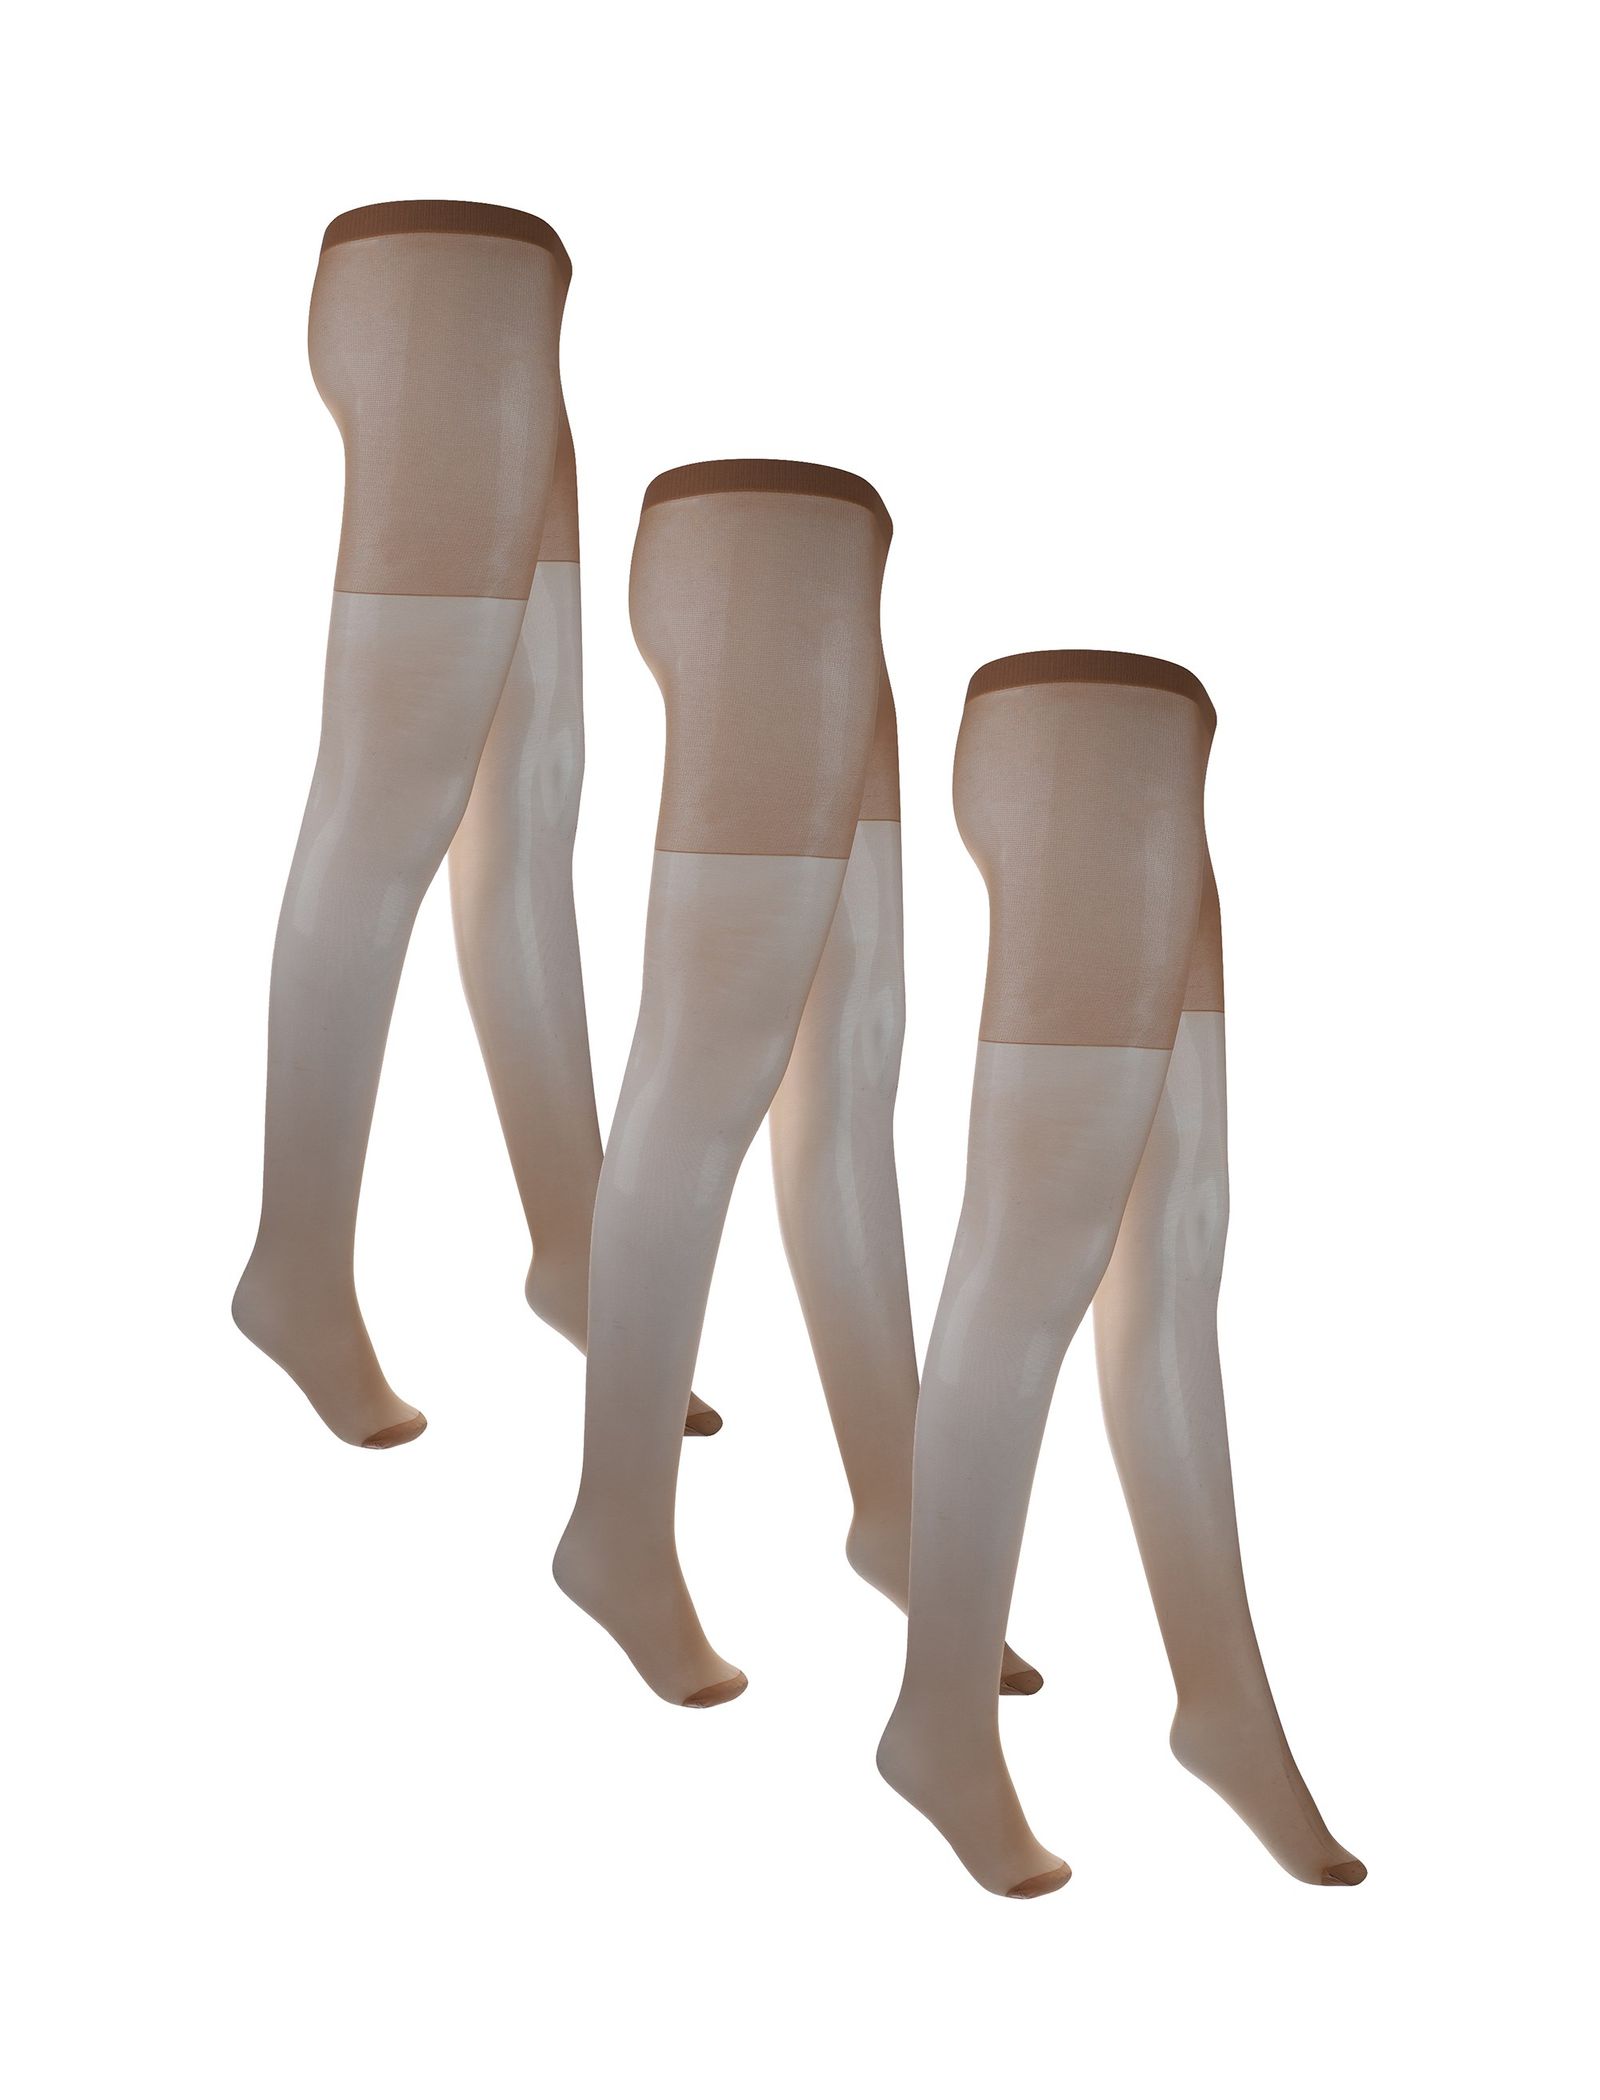 جوراب شلواری شفاف زنانه بسته 3 عددی - دبنهامز - رنگ پا - 1